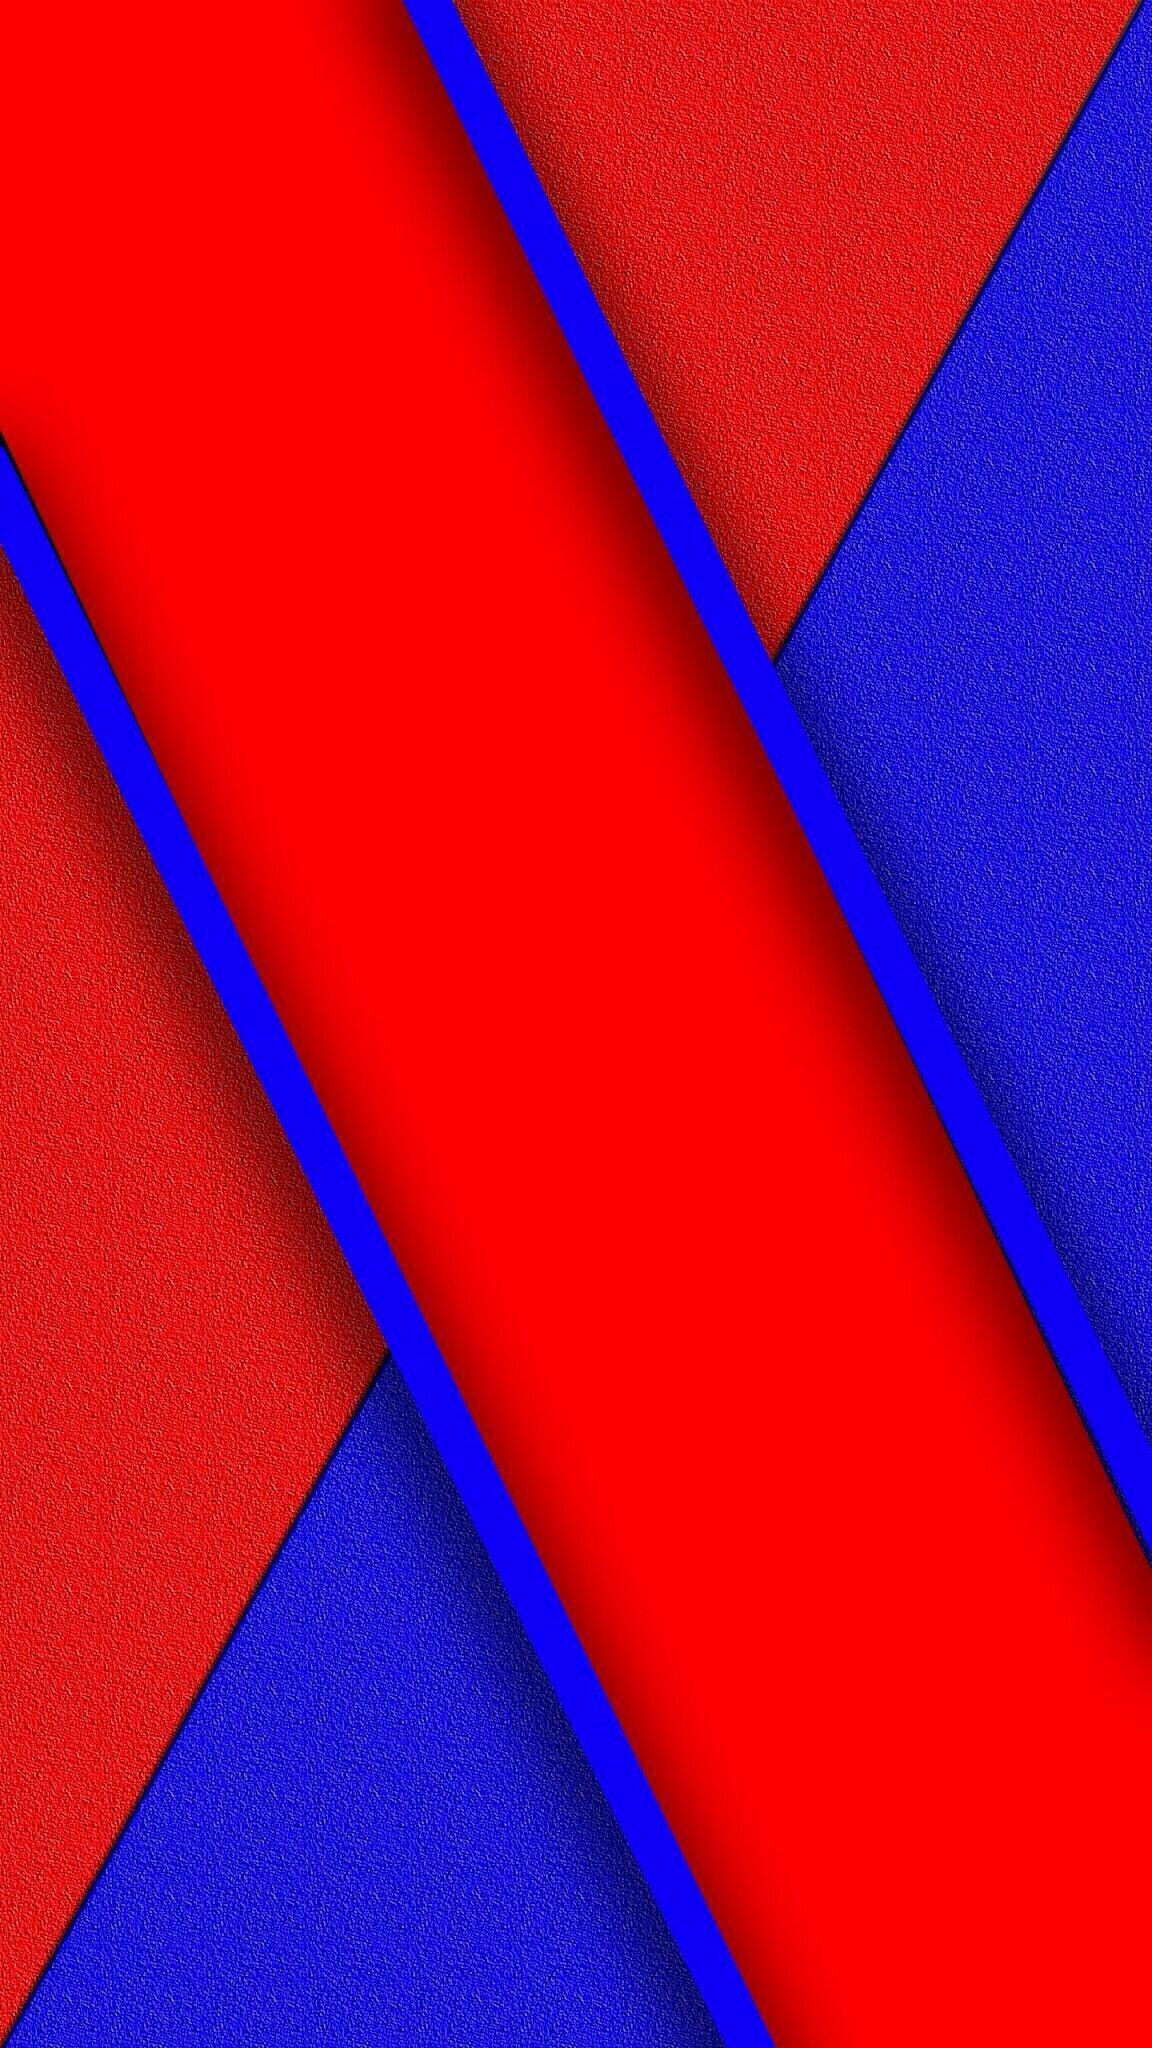 Blue and Red Abstract Wallpaper. Papéis de parede do telefone celular, Ideias de papel de parede, Papel de parede adidas